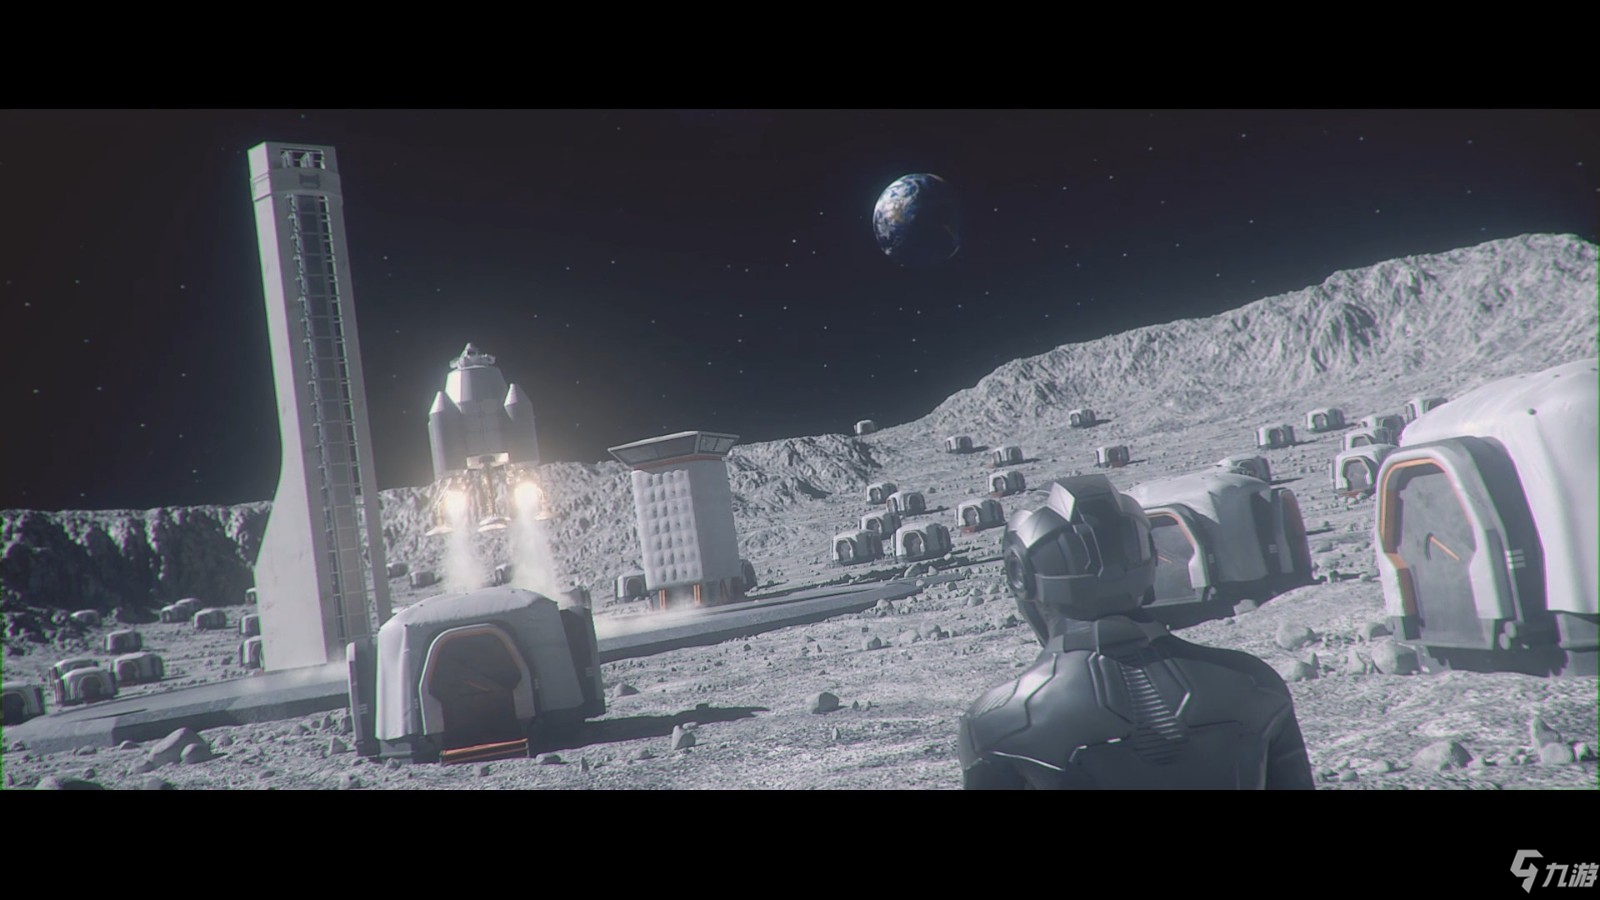 太空模拟建造游戏《月球村》上架Steam 推荐GTX 960